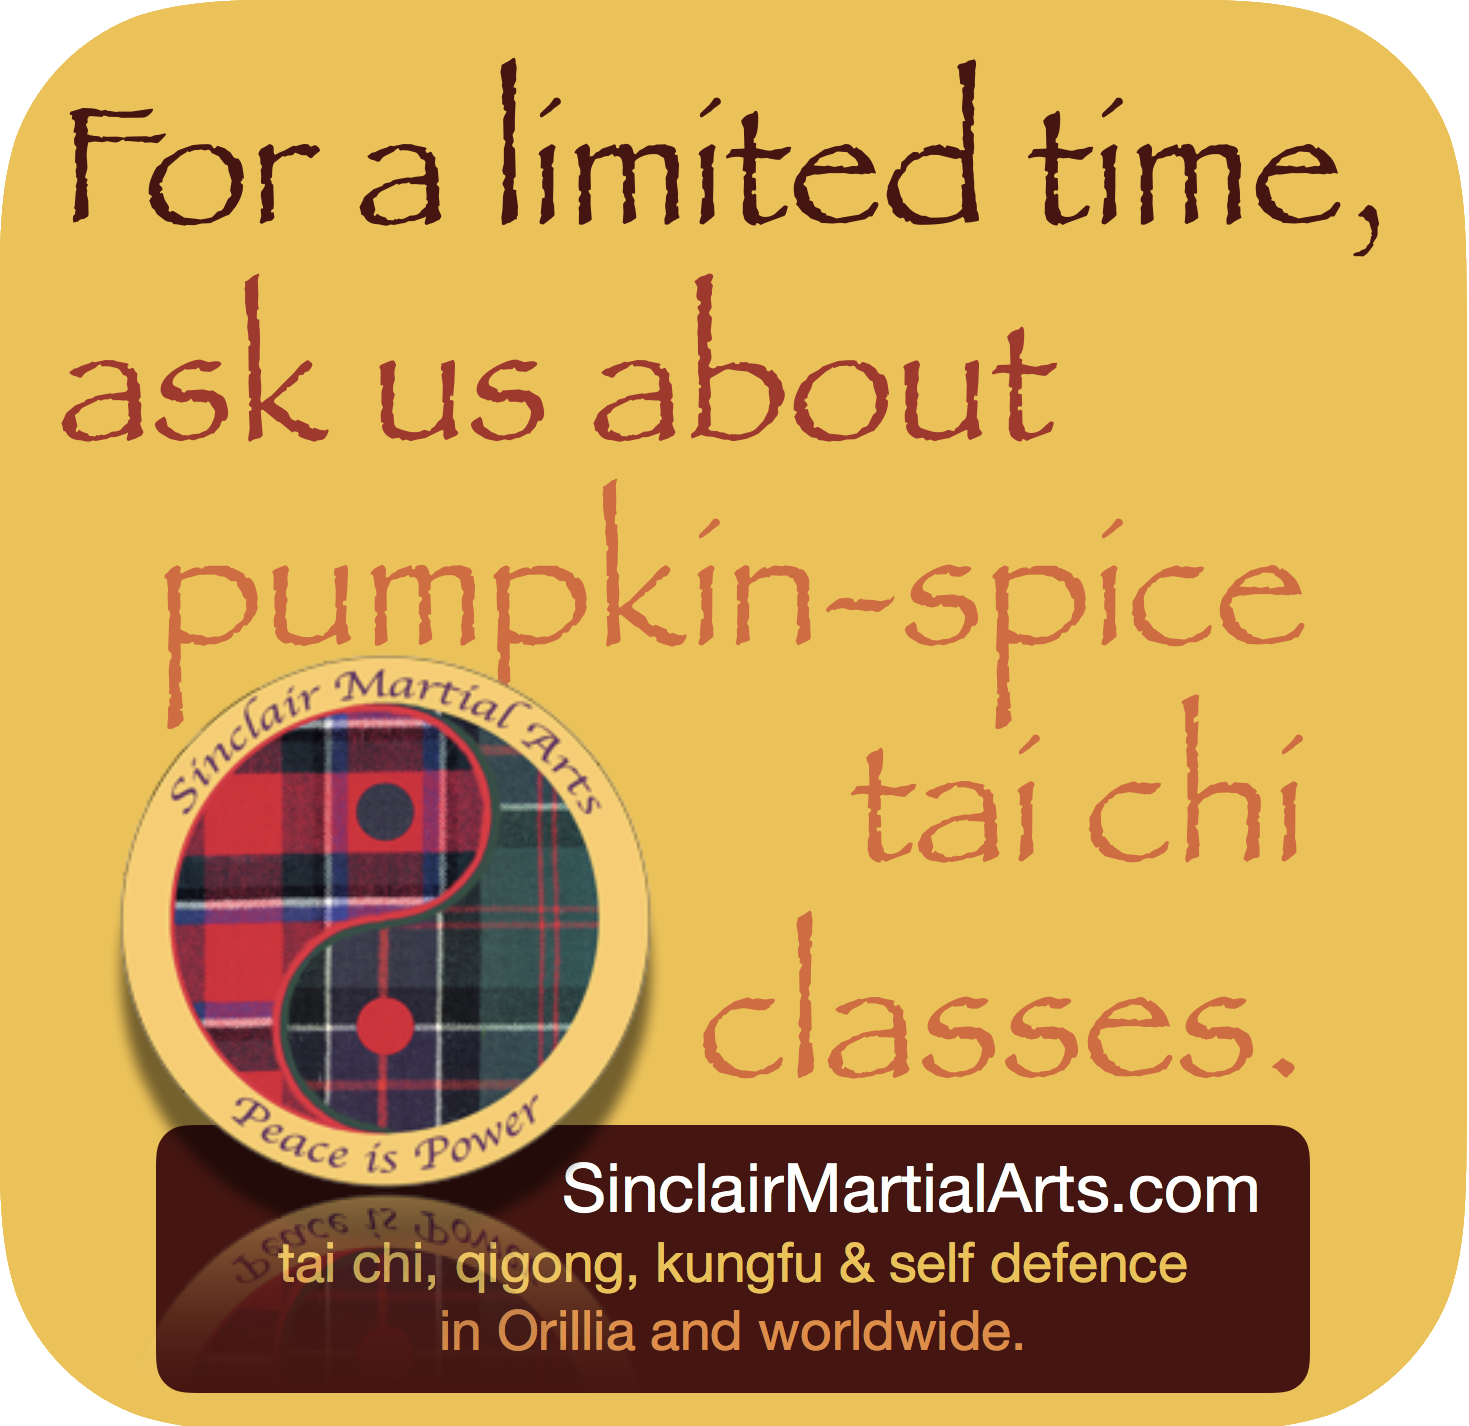 pumpkin-spice tai chi classes